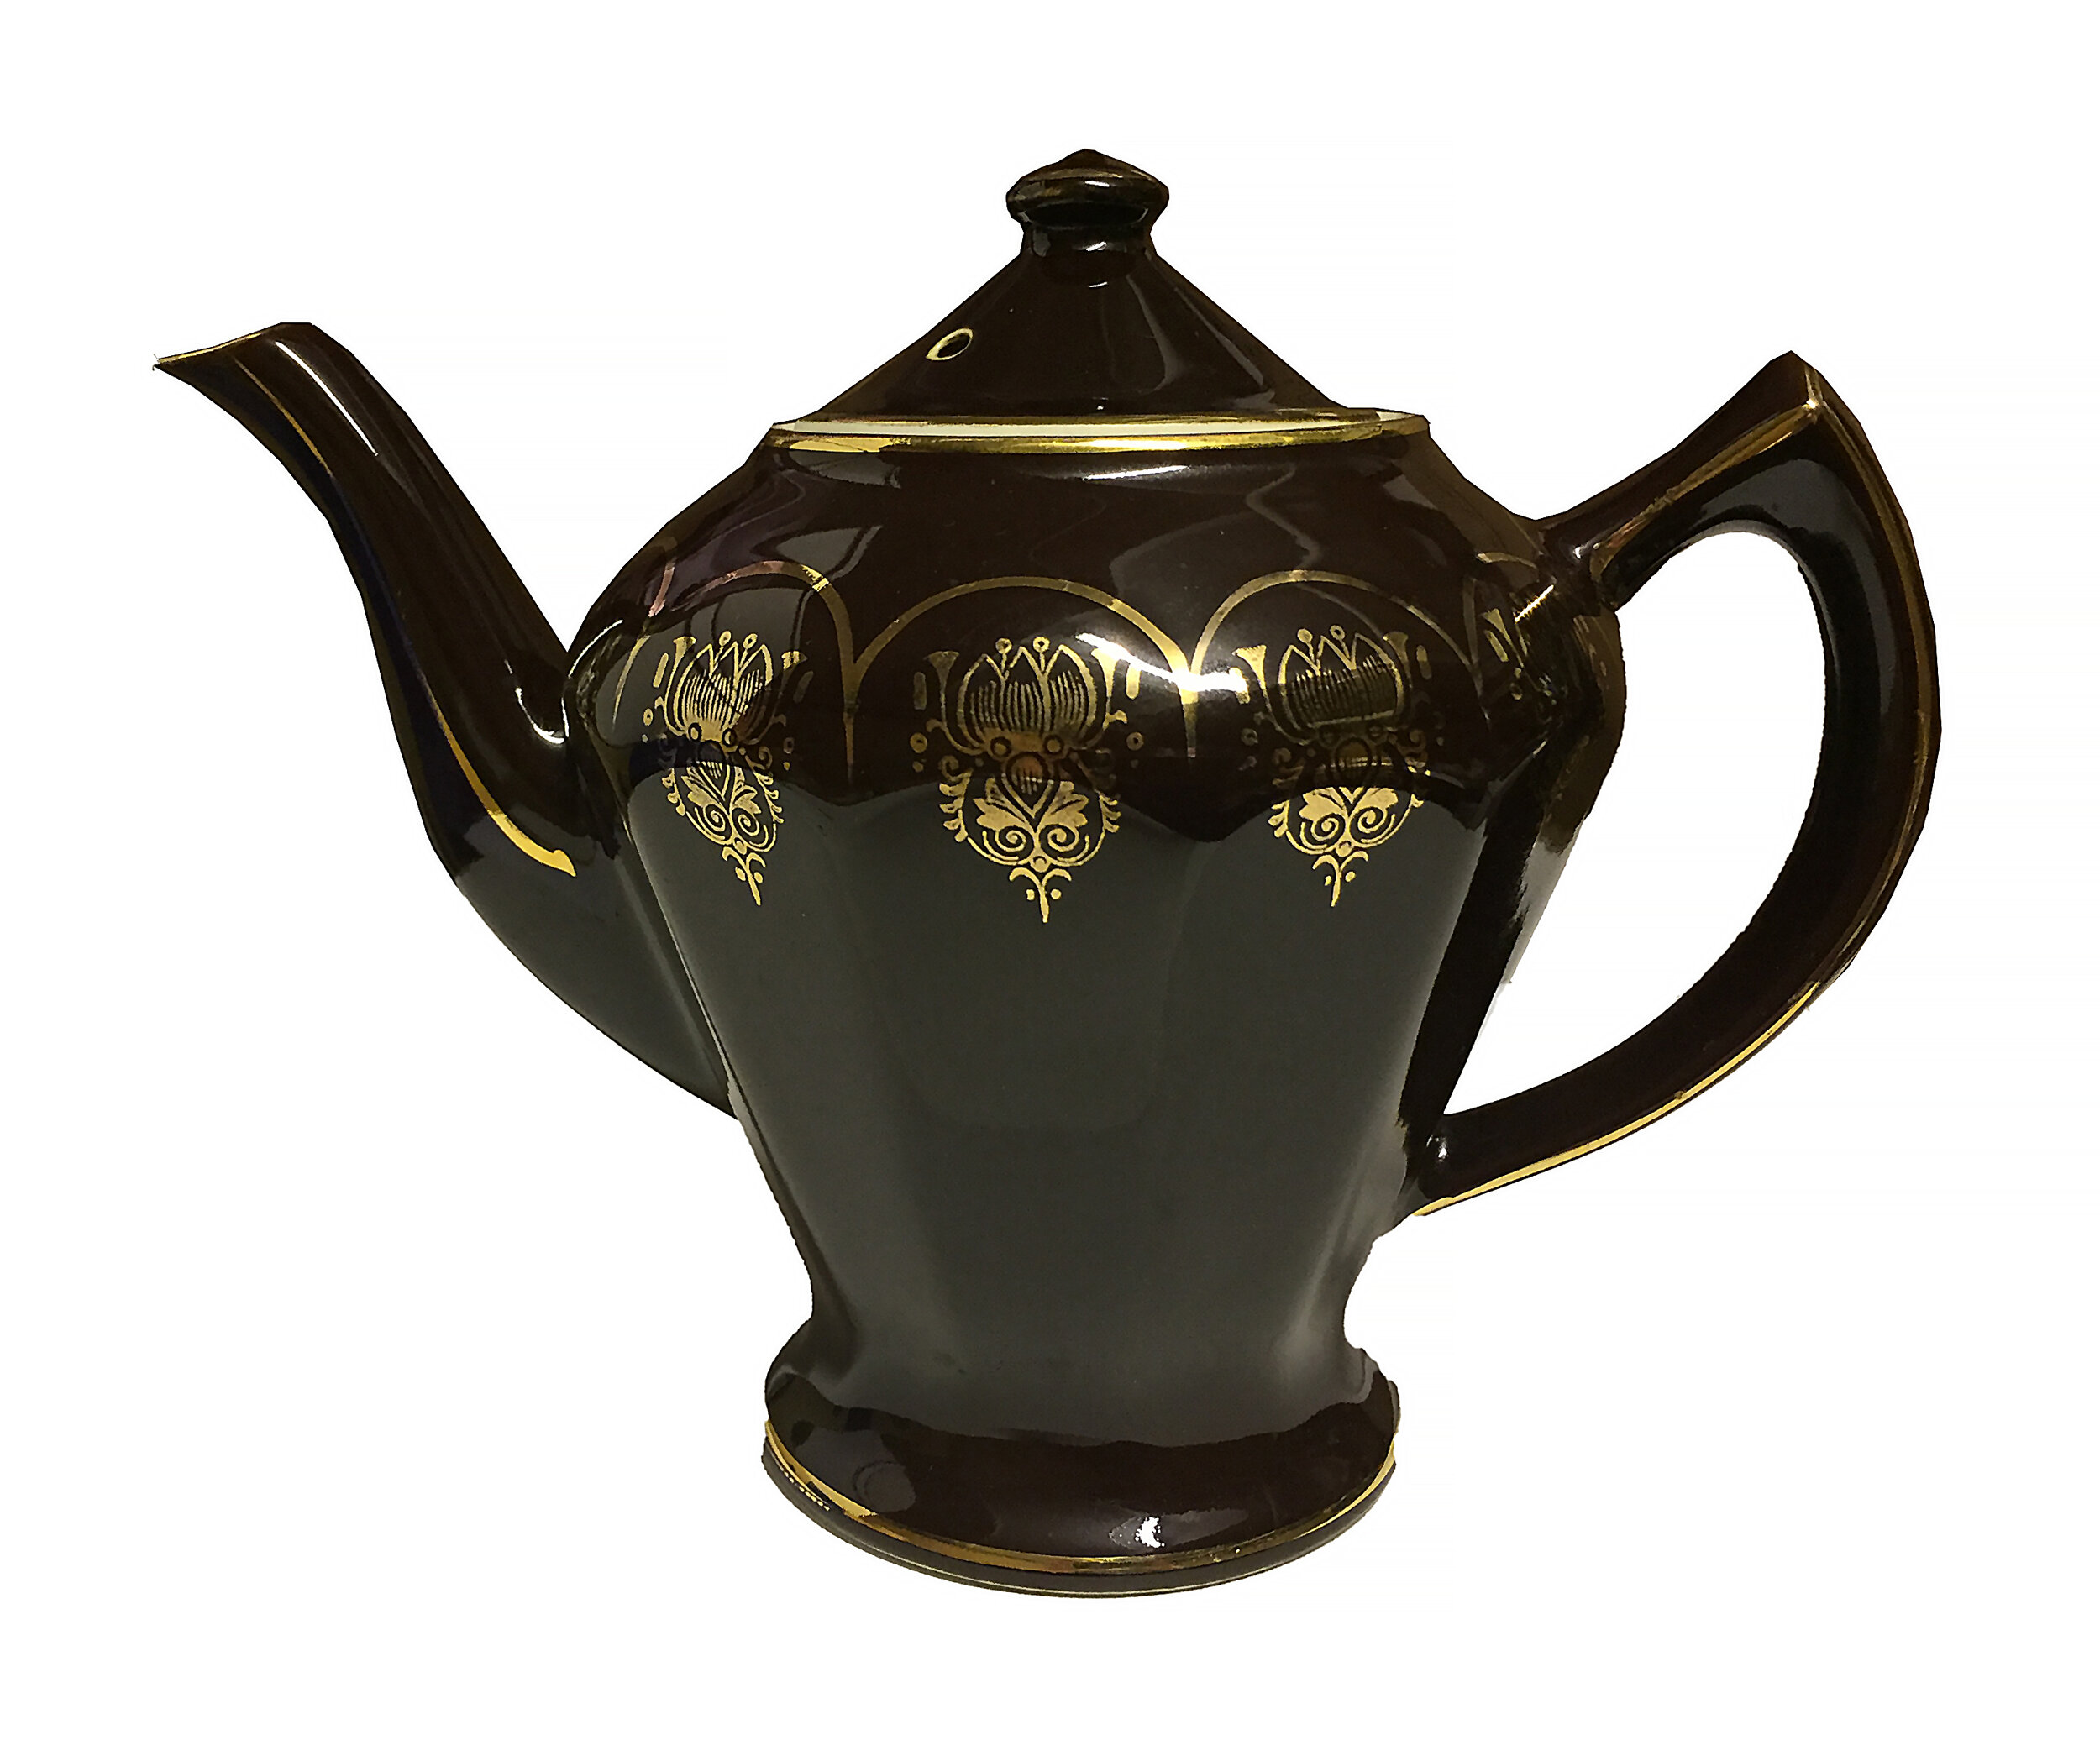 Chester teapot - Wikipedia